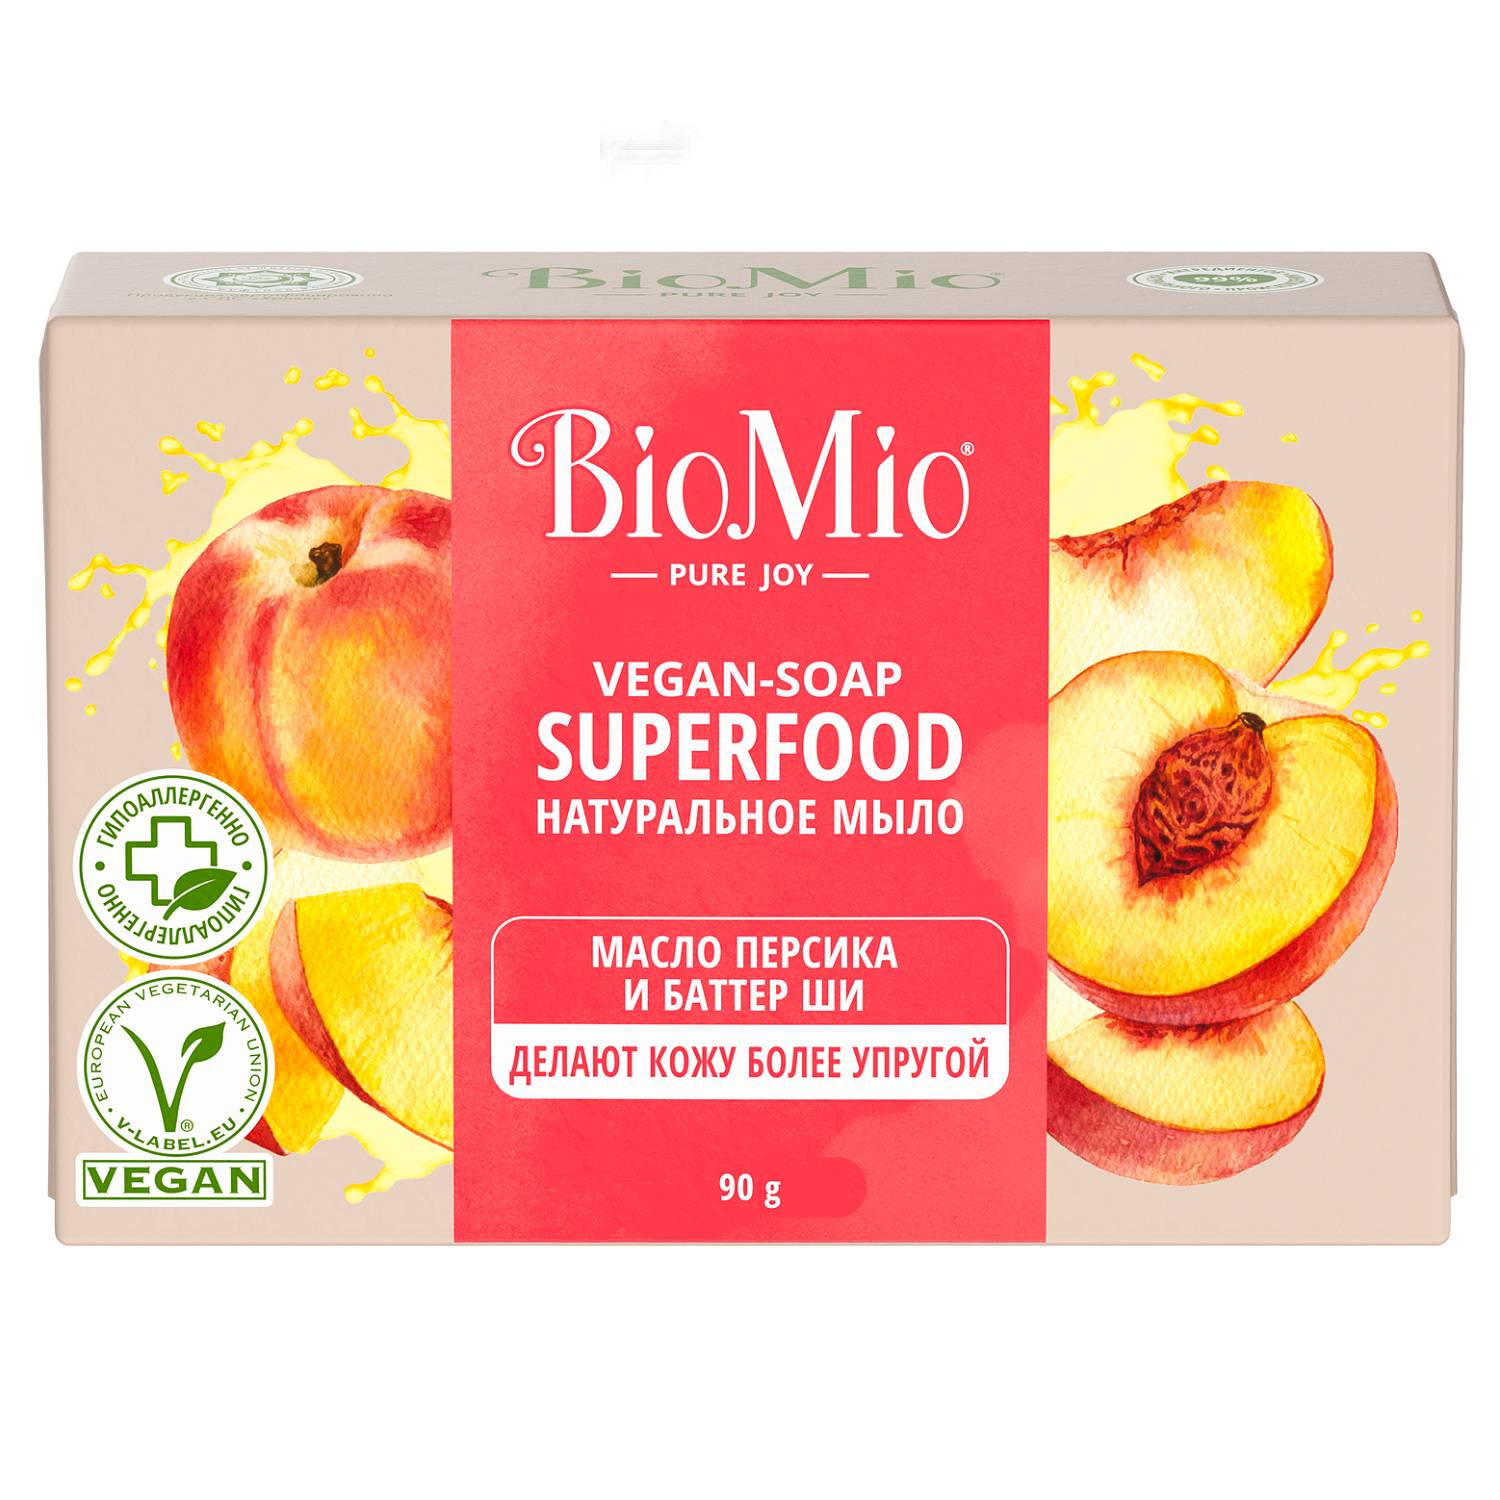 biomio bio soap натуральное мыло персик и ши 3шт по 90 г BioMio Натуральное мыло Персик и ши Vegan Soap Superfood, 90 г (BioMio, Мыло)